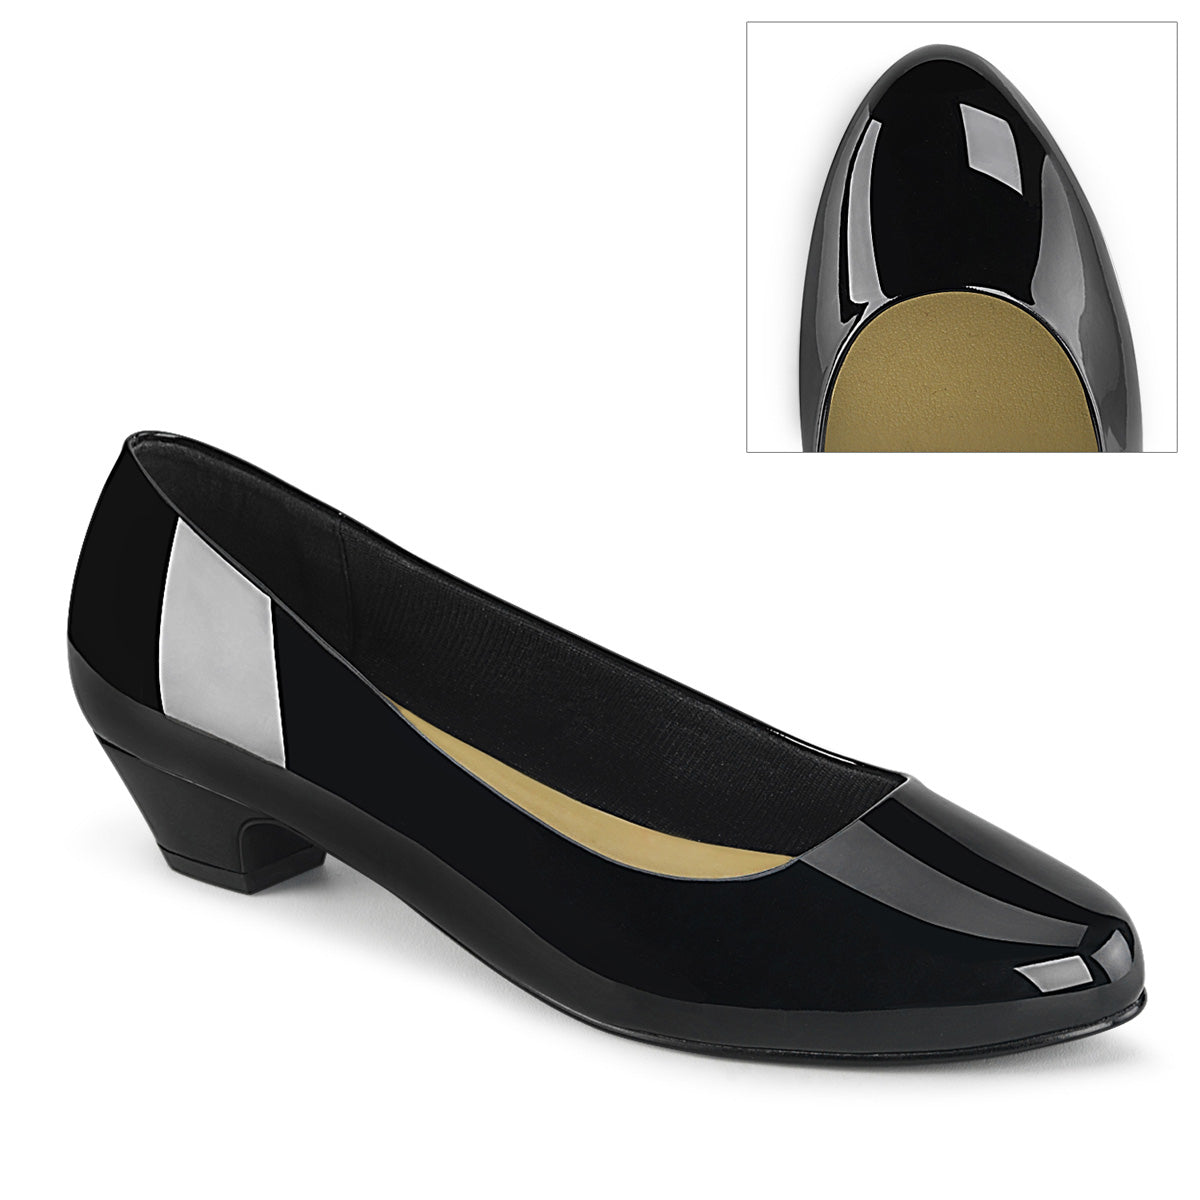 GWEN-01 Large Size Ladies Shoes 1.5" Heel Black Patent Fetish Footwear